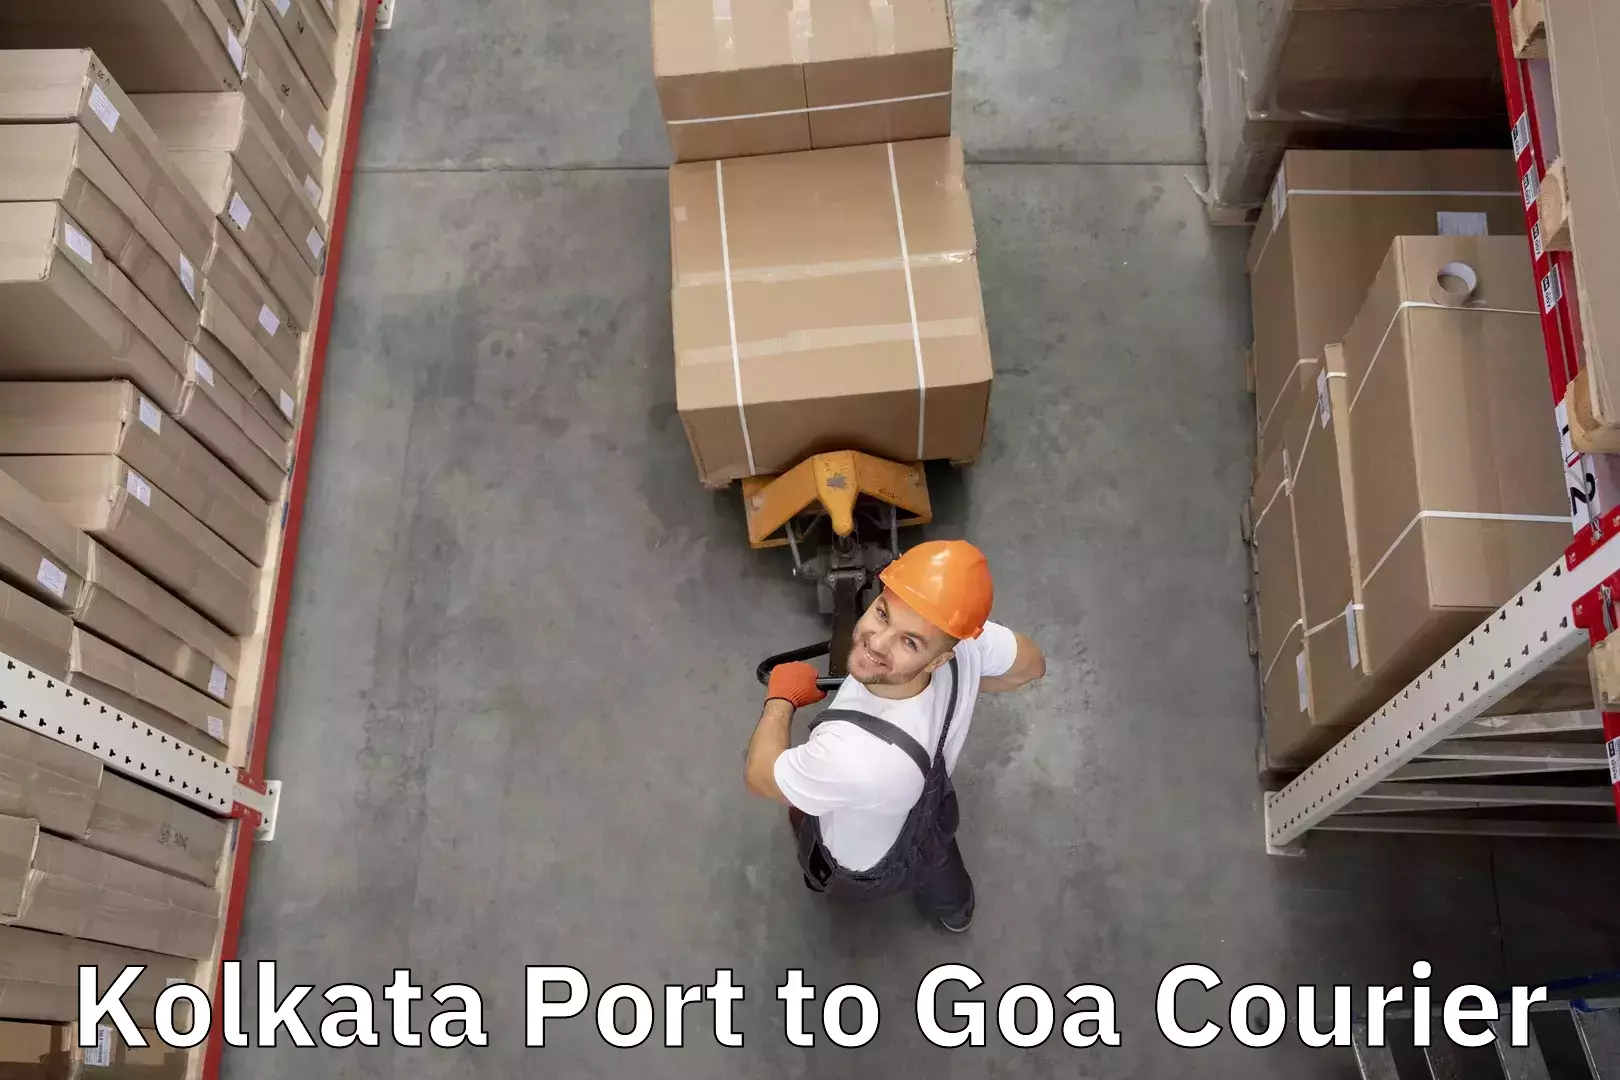 Luggage forwarding service Kolkata Port to South Goa